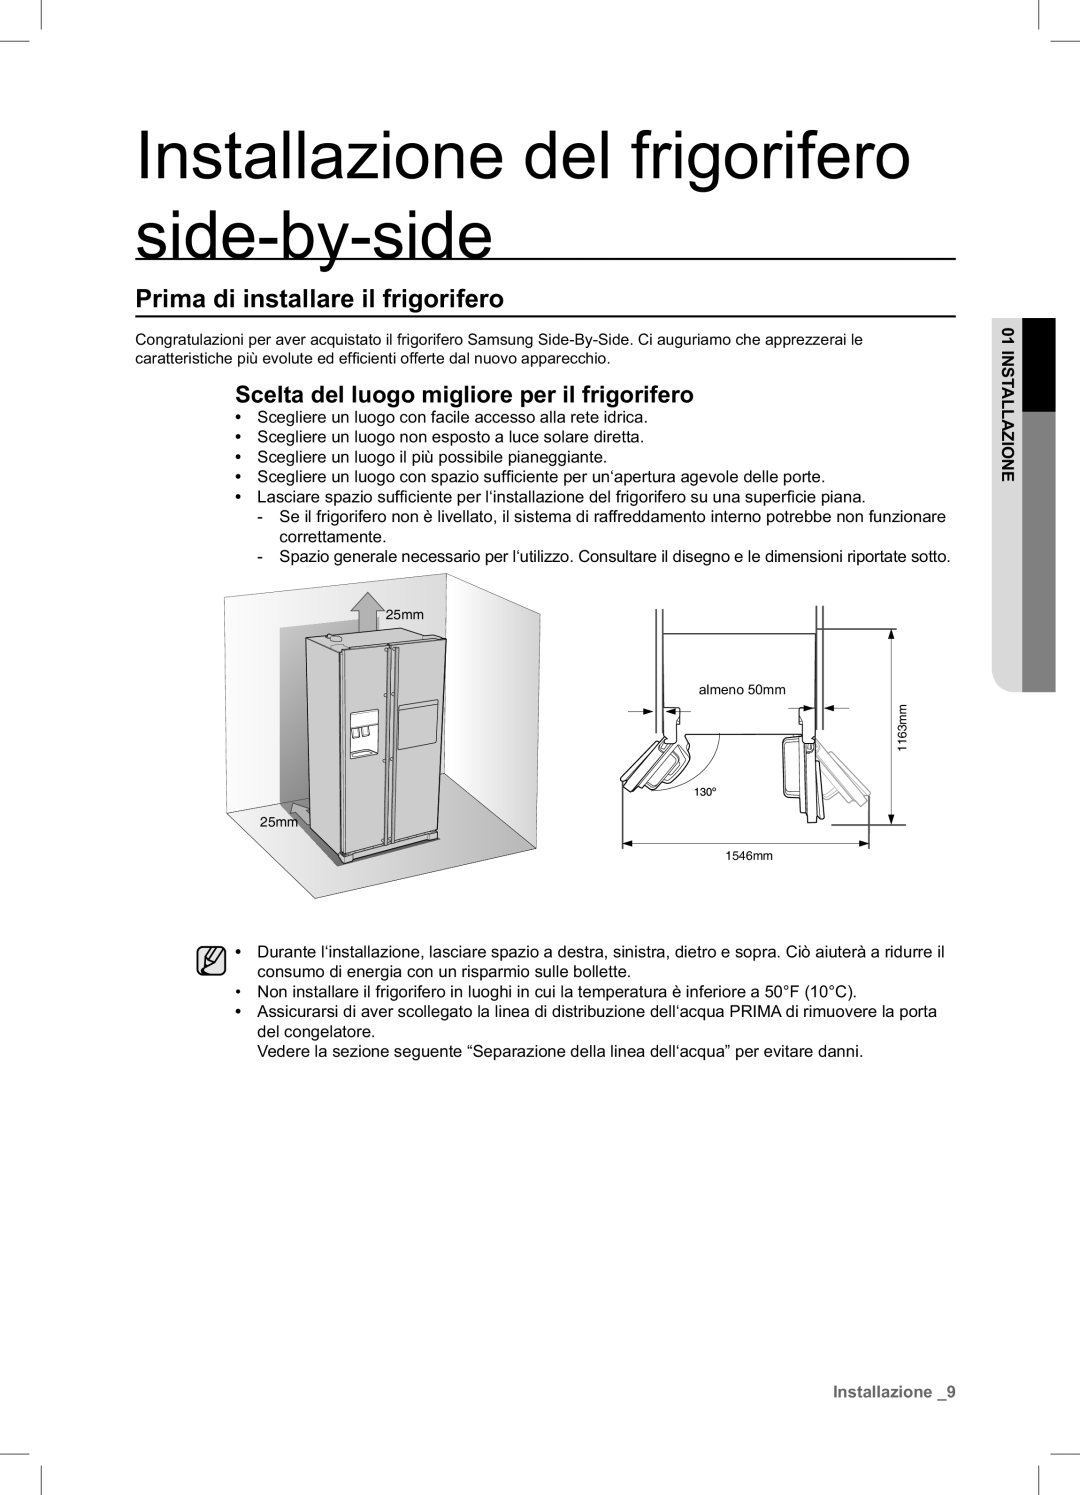 Samsung RSA1NTPE1/XES manual Installazione del frigorifero side-by-side, Prima di installare il frigorifero 